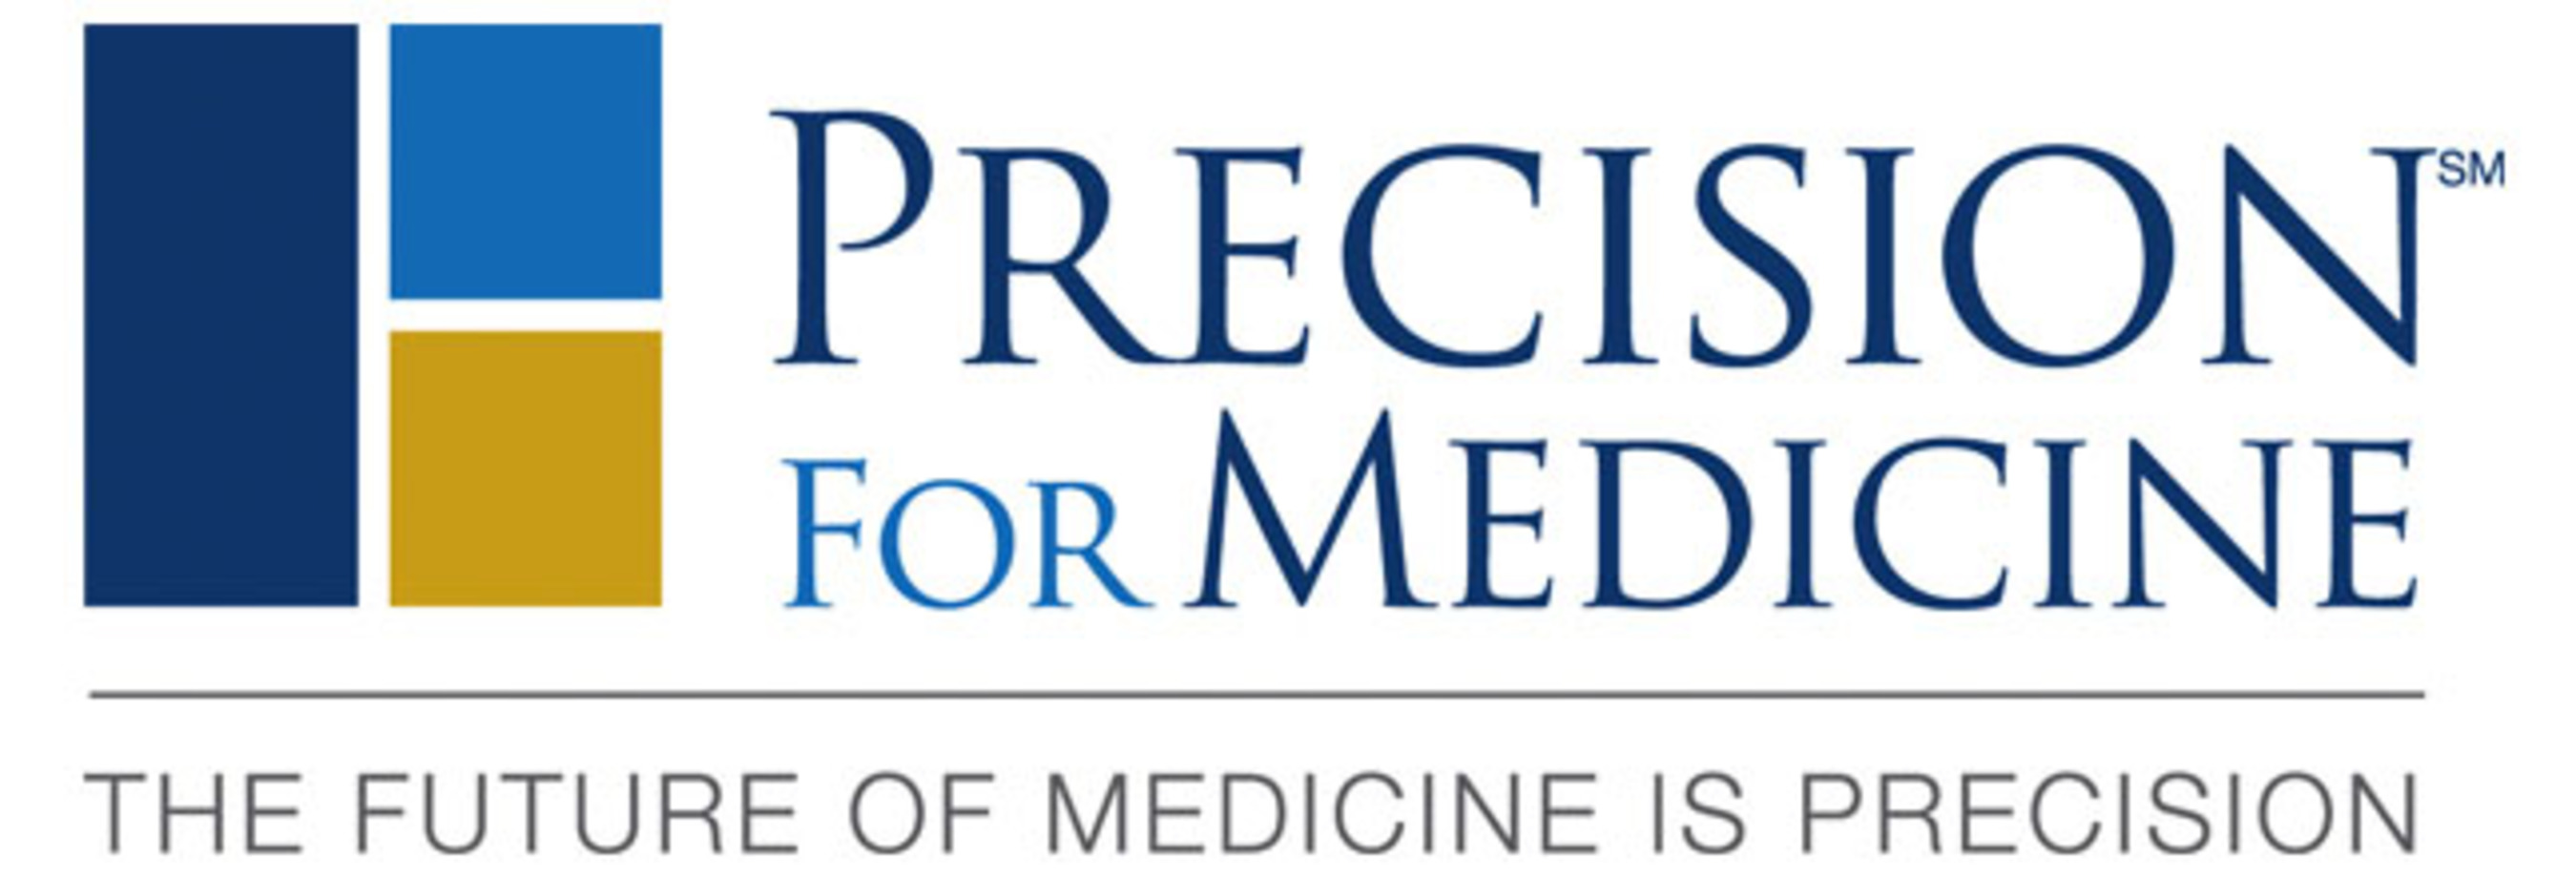 Demonstrating Value In The Era Of Precision Medicine www.precisionformedicine.com